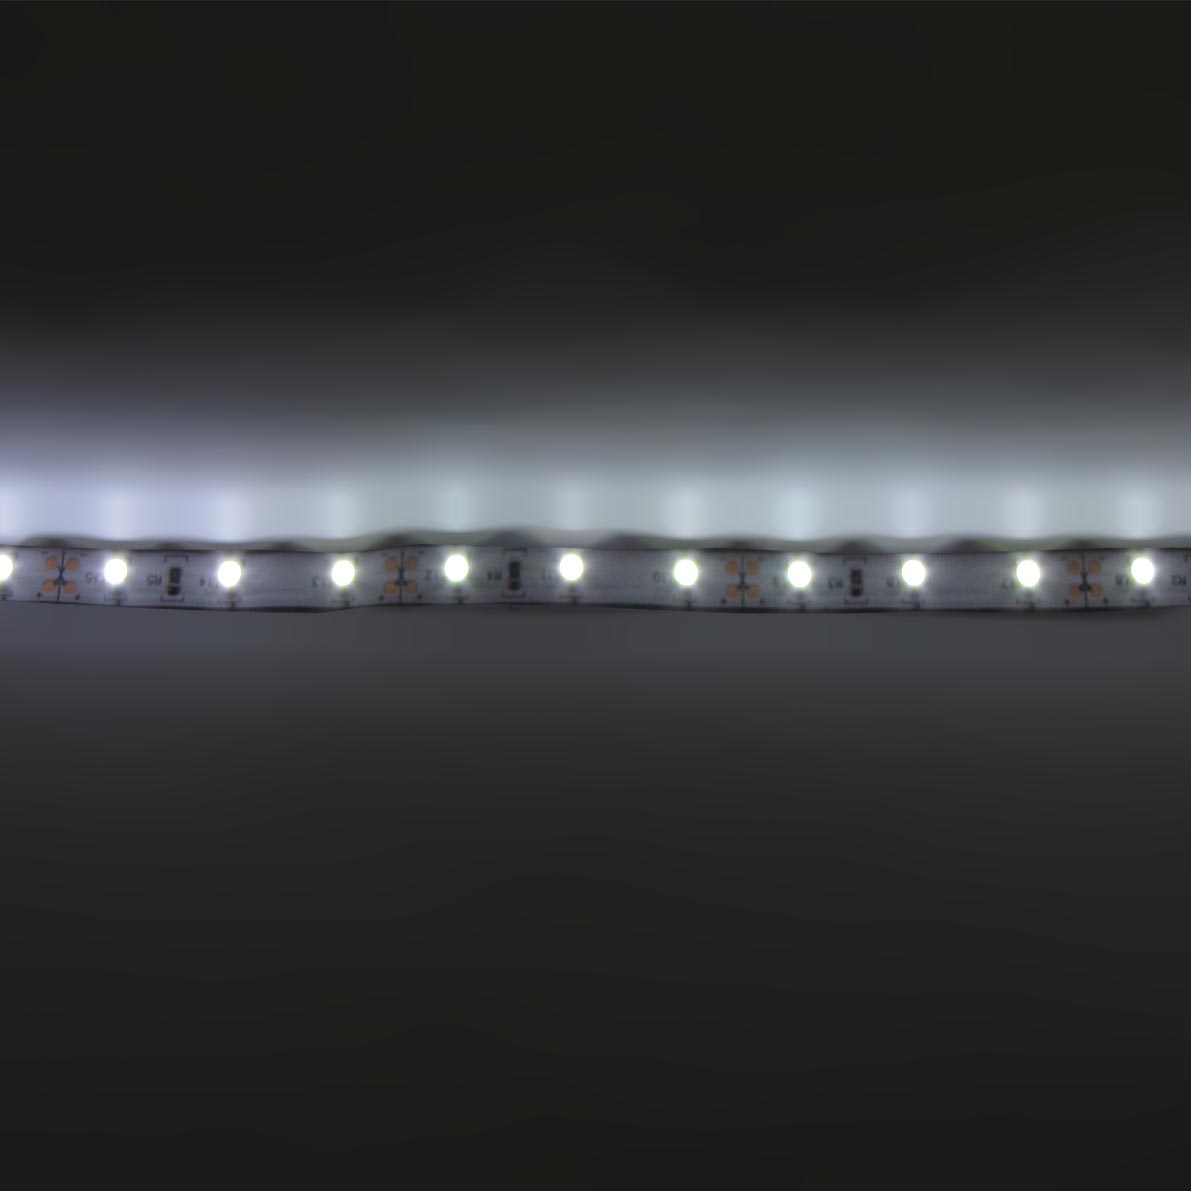 светодиодная лента standart pro class, 3528, 60 led/m, white, 12v, ip20, b11, артикул 26948